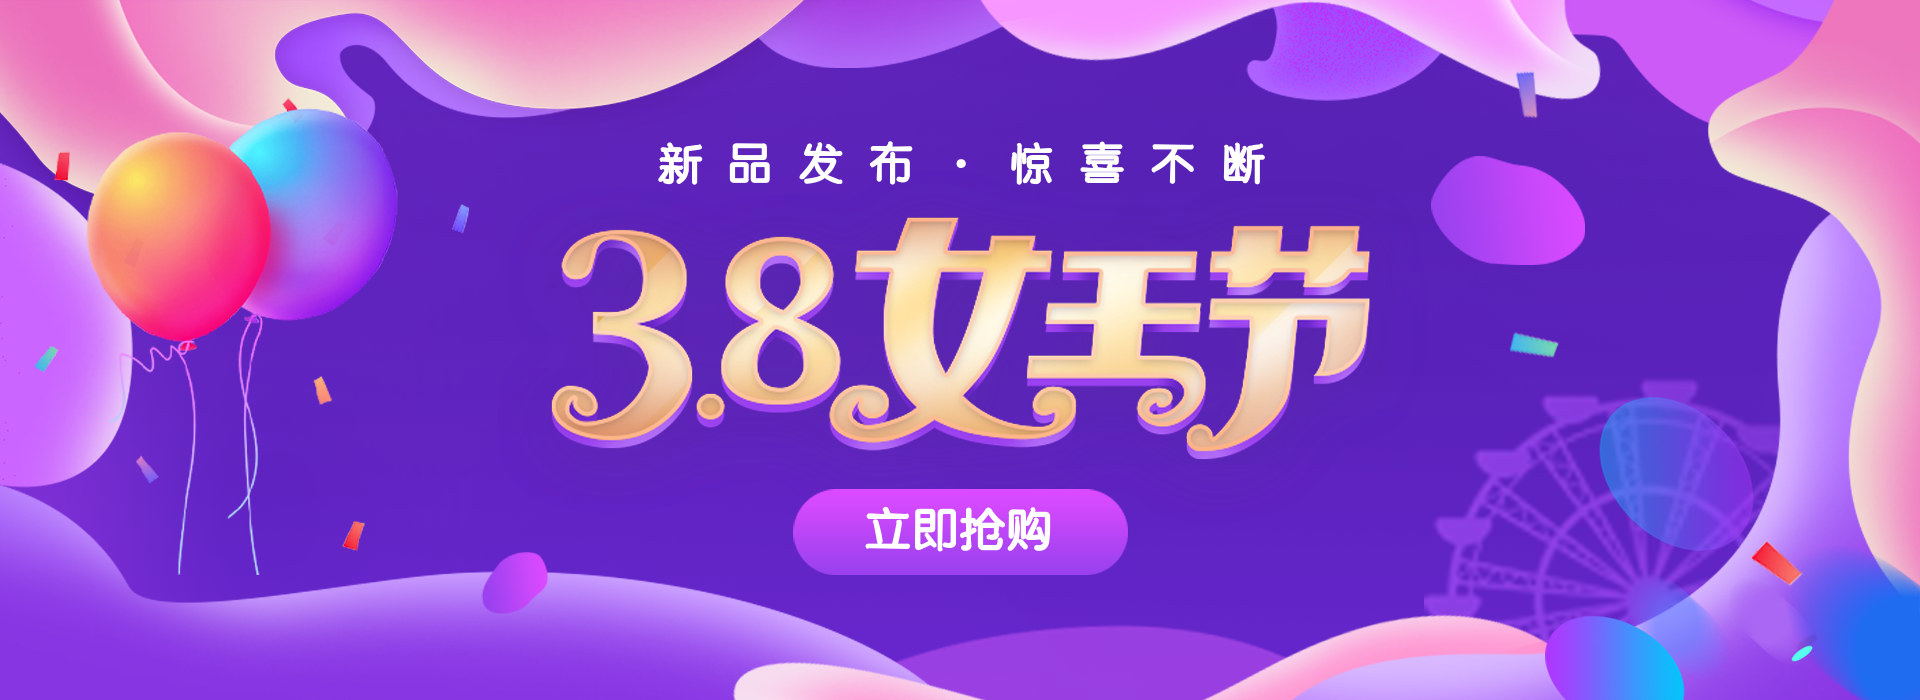 38女王节/奢华海报预览效果